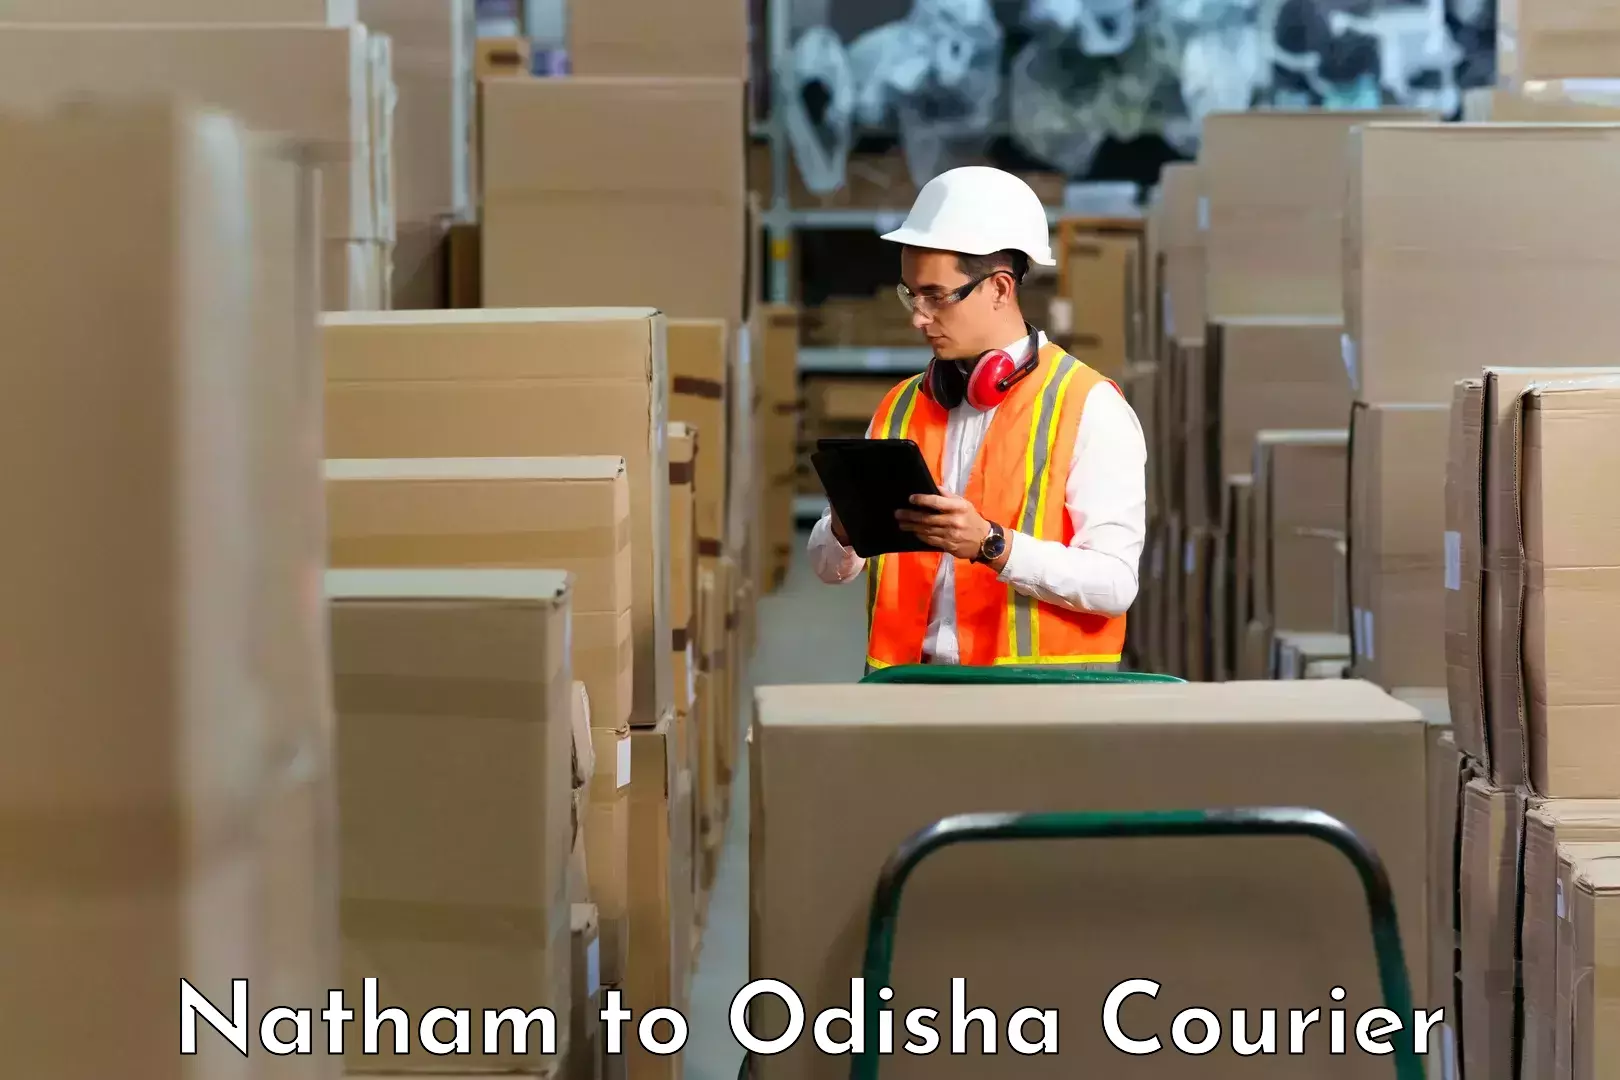 Courier app Natham to Ukhunda